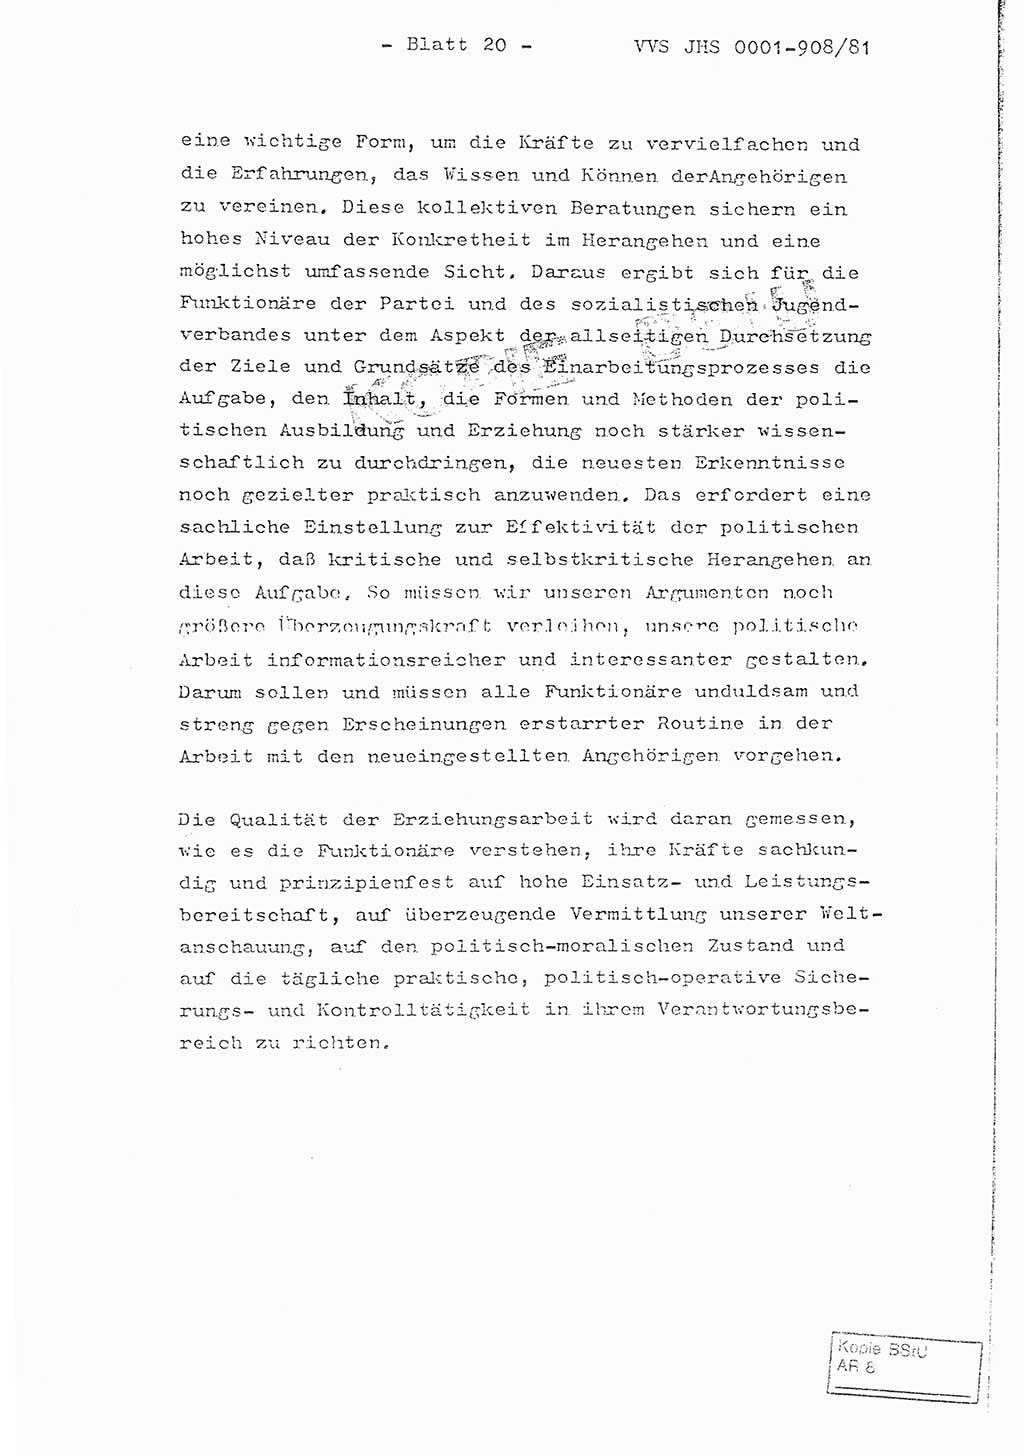 Fachschulabschlußarbeit Oberleutnant Wolfgang Wittmann (Abt. ⅩⅣ), Ministerium für Staatssicherheit (MfS) [Deutsche Demokratische Republik (DDR)], Juristische Hochschule (JHS), Vertrauliche Verschlußsache (VVS) o001-908/82, Potsdam 1982, Blatt 20 (FS-Abschl.-Arb. MfS DDR JHS VVS o001-908/82 1982, Bl. 20)